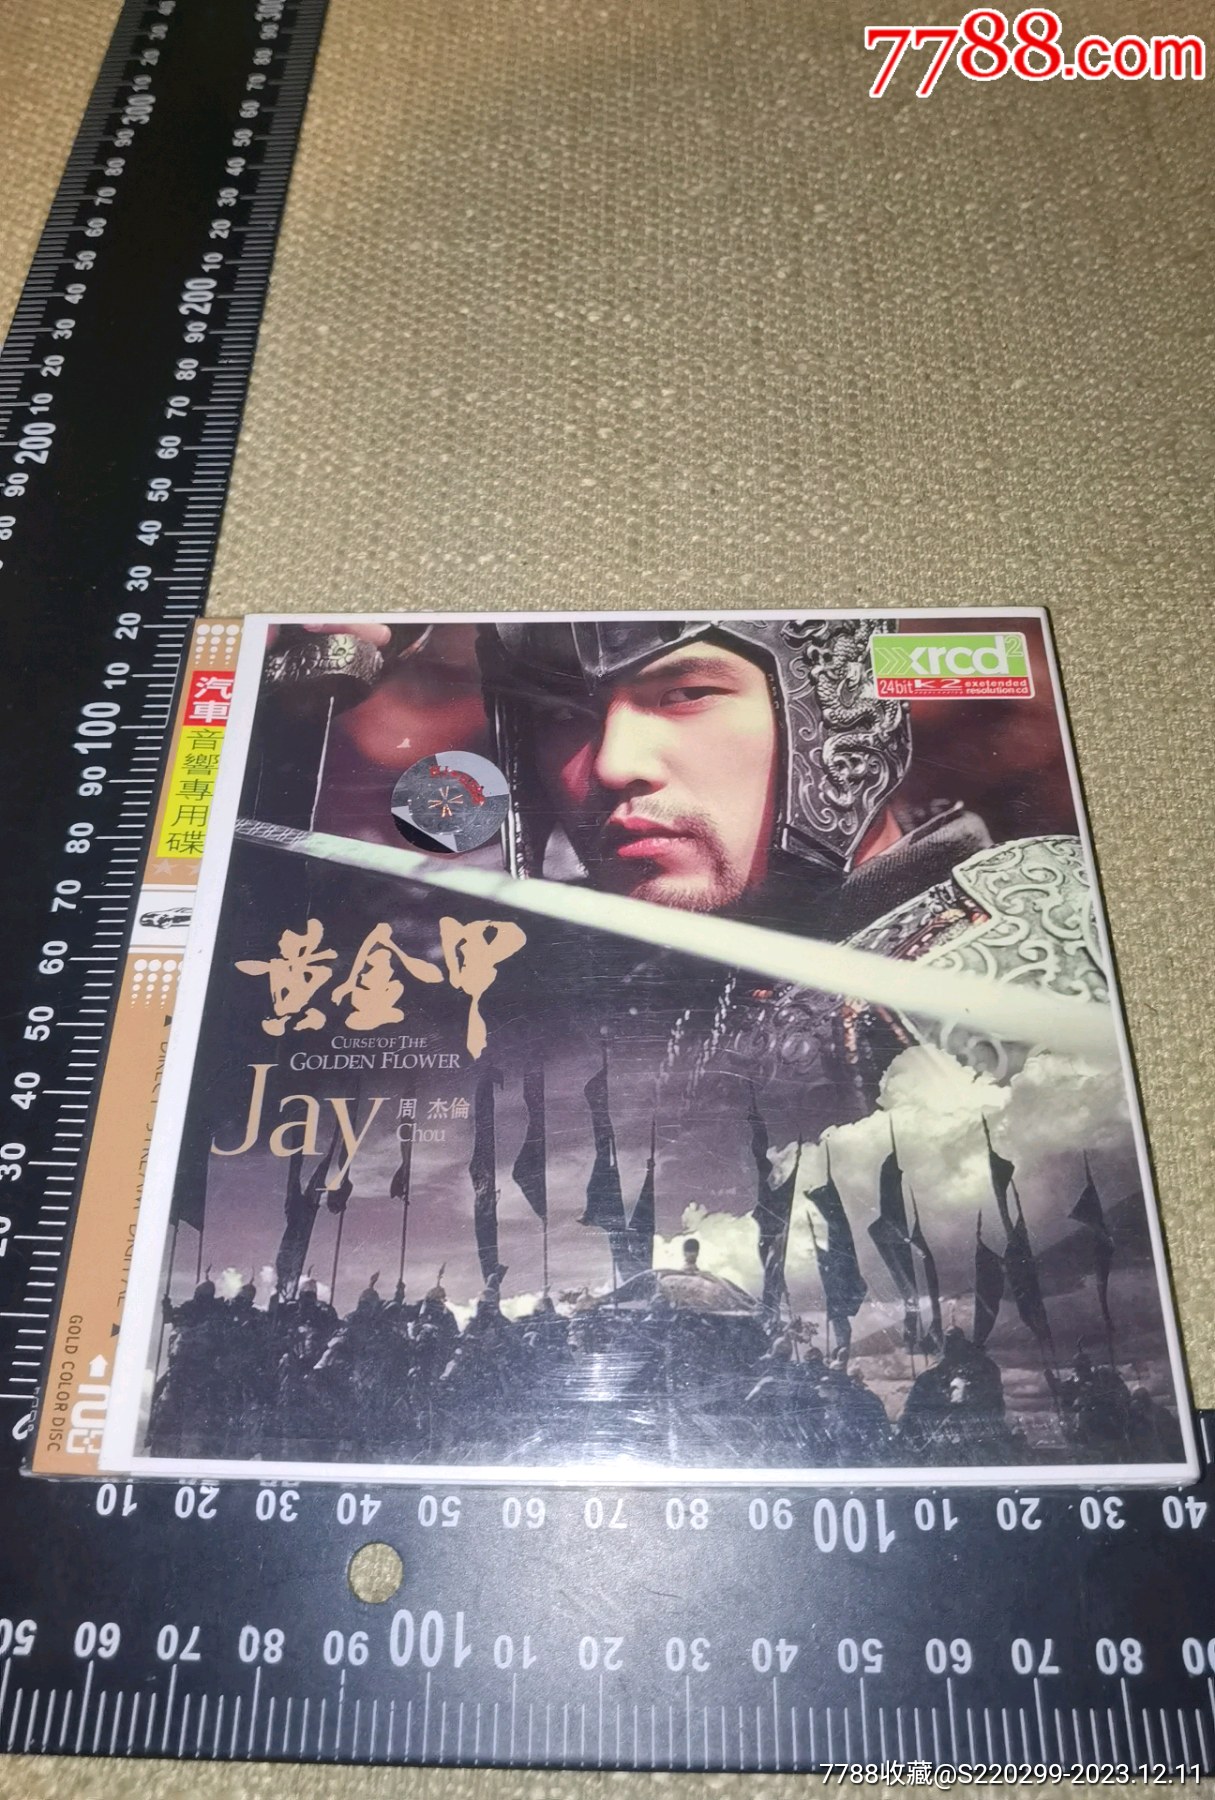 《周杰伦,黄金甲》(2汽车专用cd/未开封/精装/2006/广西文化音像出版